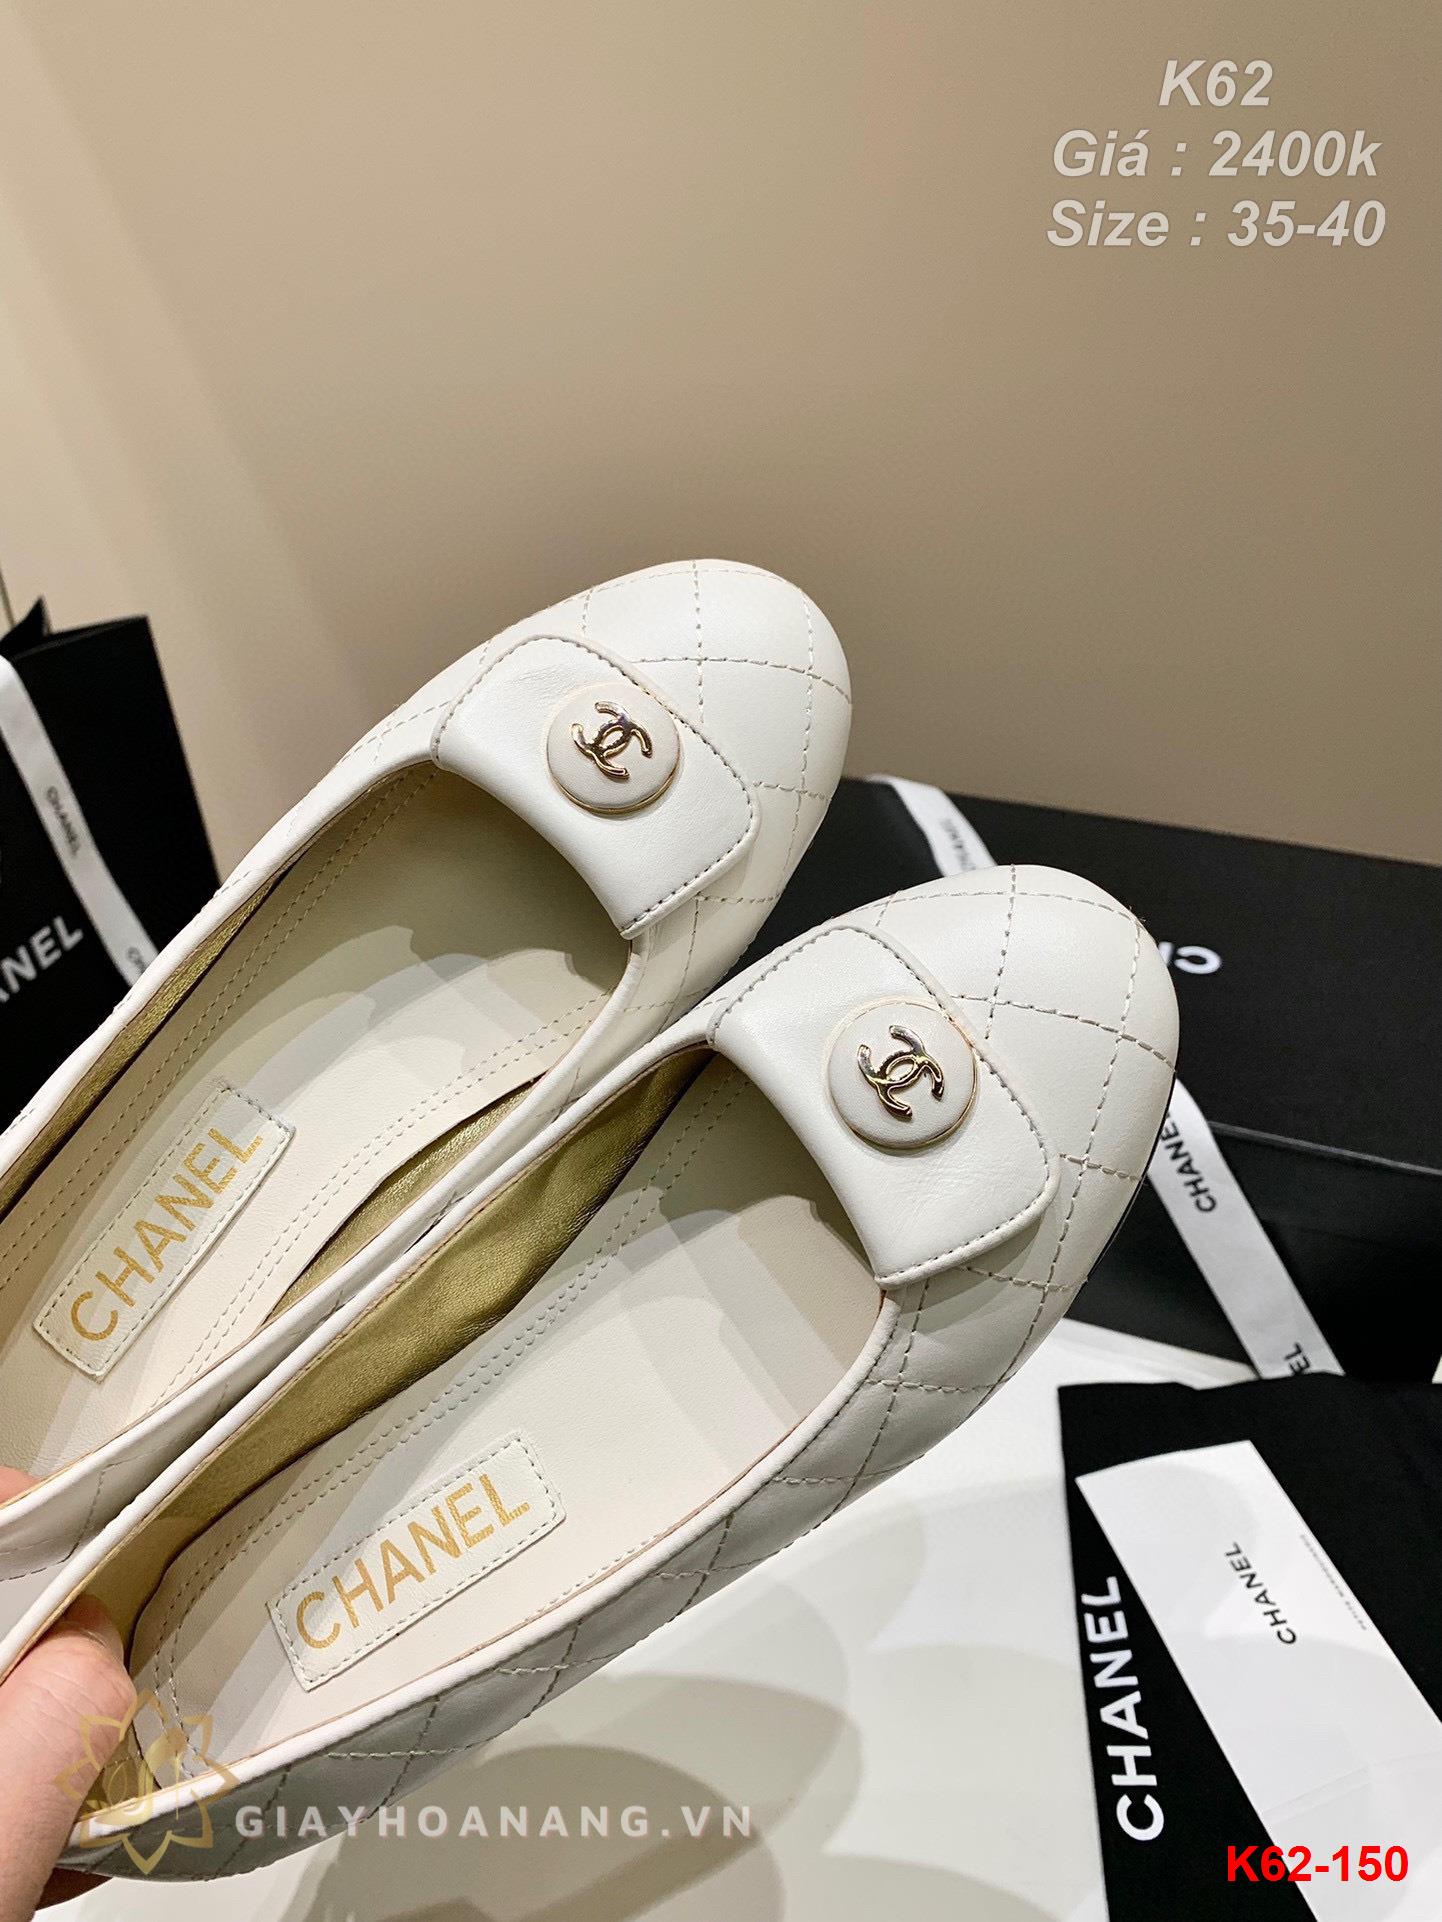 K62-150 Chanel giày bệt siêu cấp